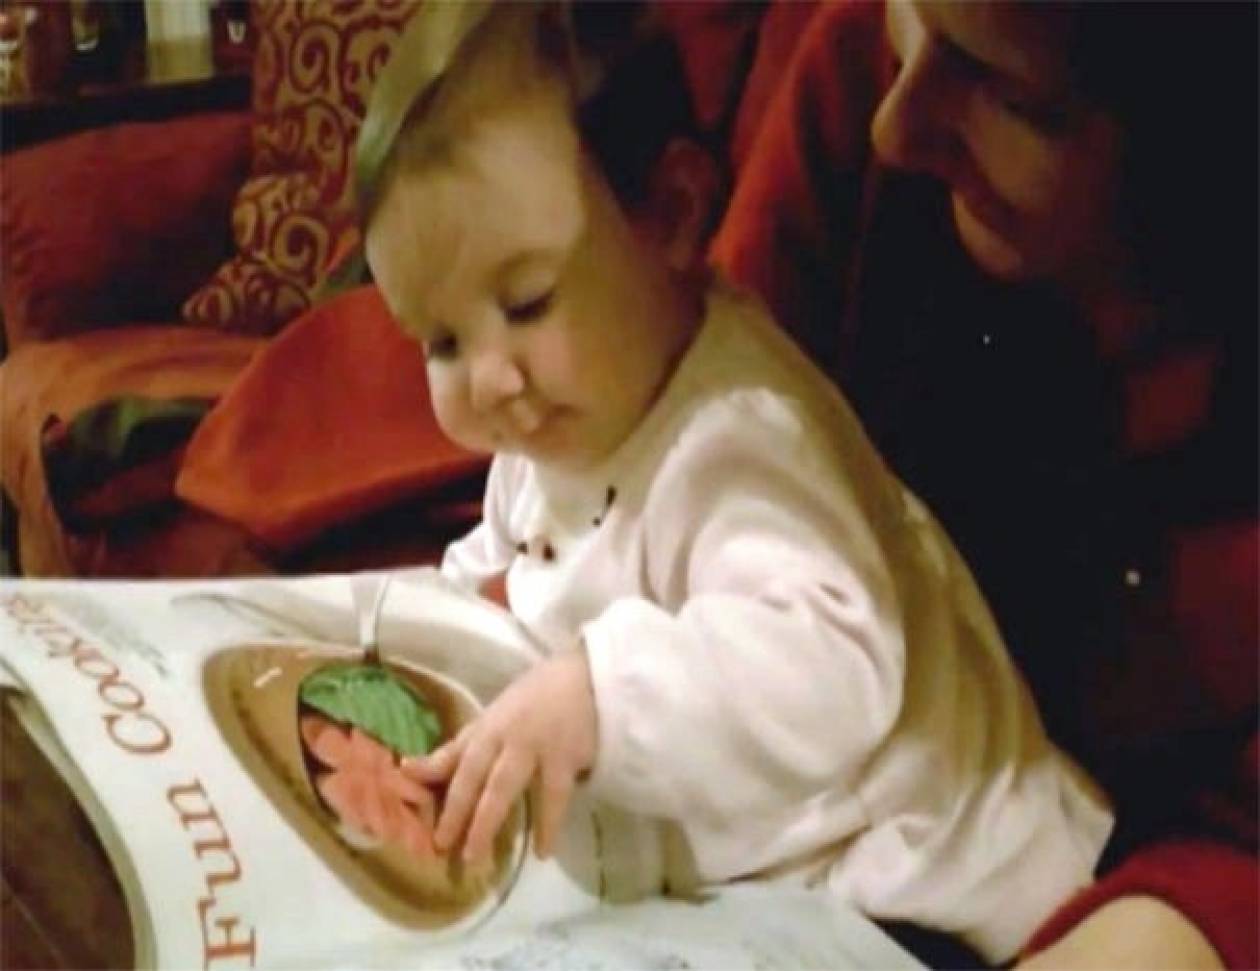 Μωράκι προσπαθεί να φάει τις λιχουδιές που βλέπει σε περιοδικό! (vid)